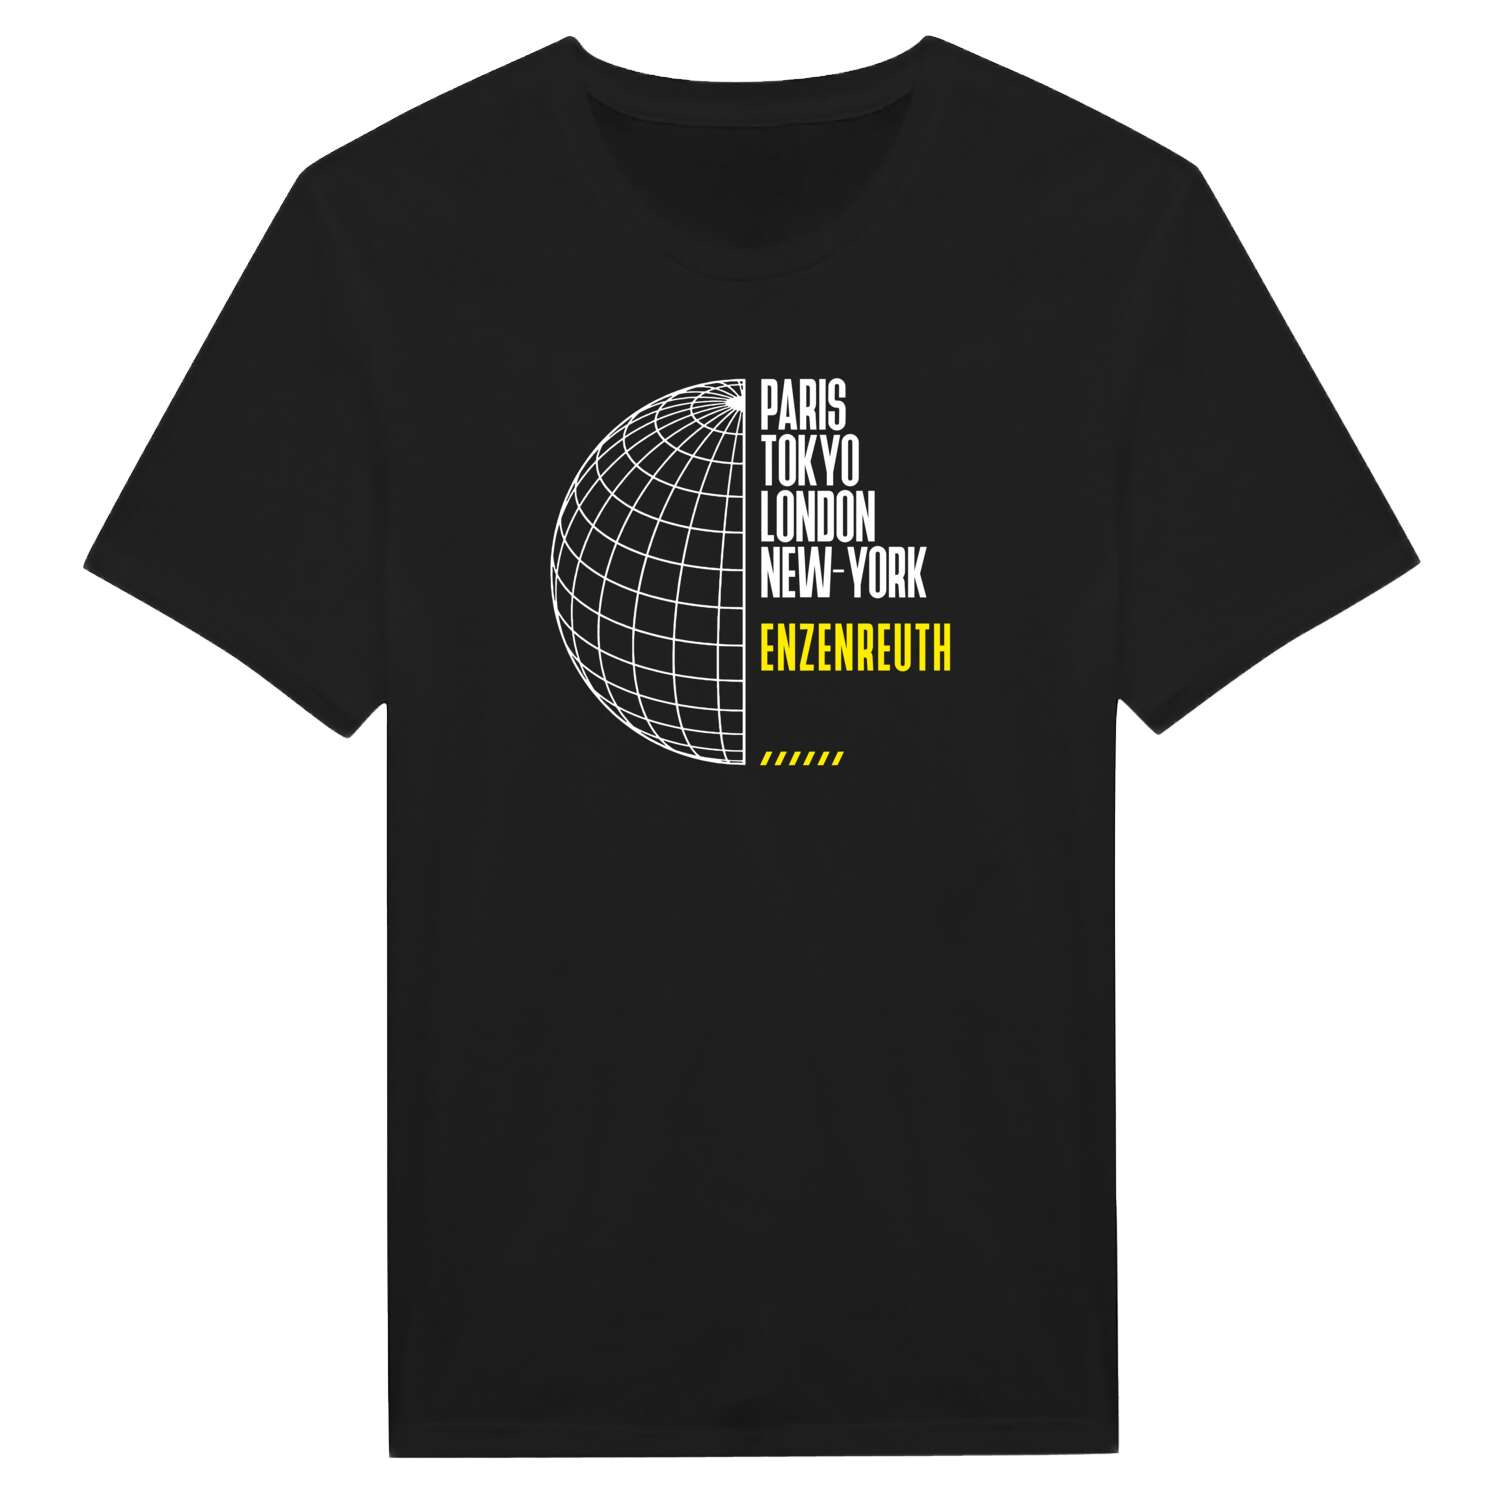 Enzenreuth T-Shirt »Paris Tokyo London«